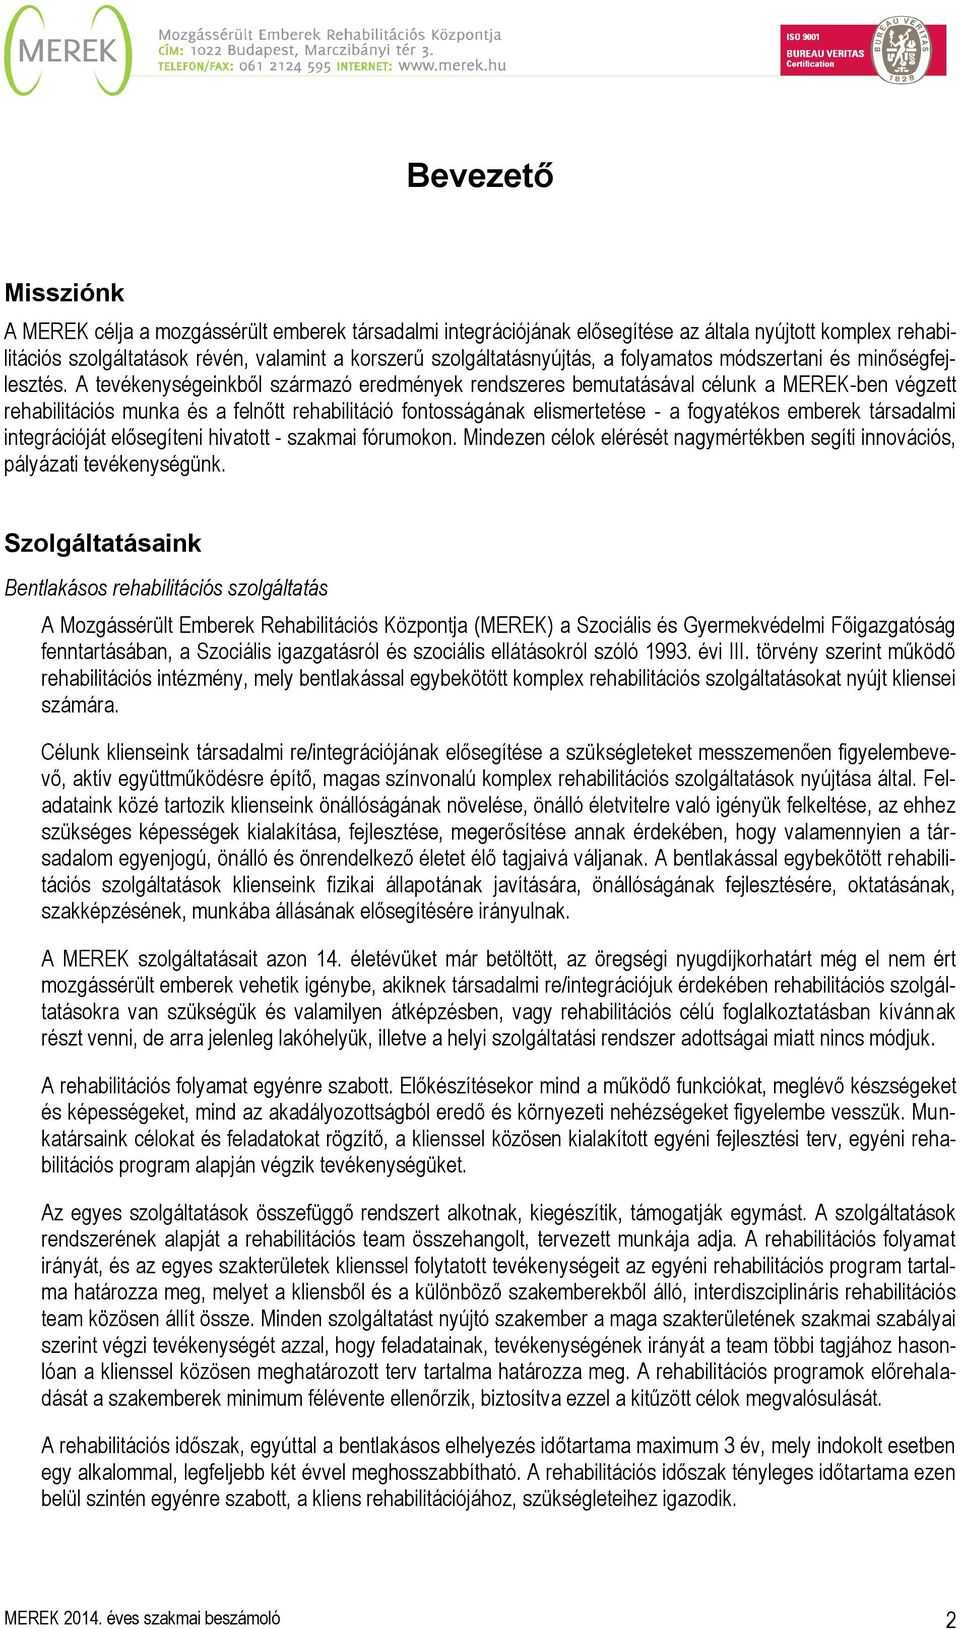 Mozgássérült Emberek Rehabilitációs Központja év végi szakmai beszámoló -  PDF Ingyenes letöltés